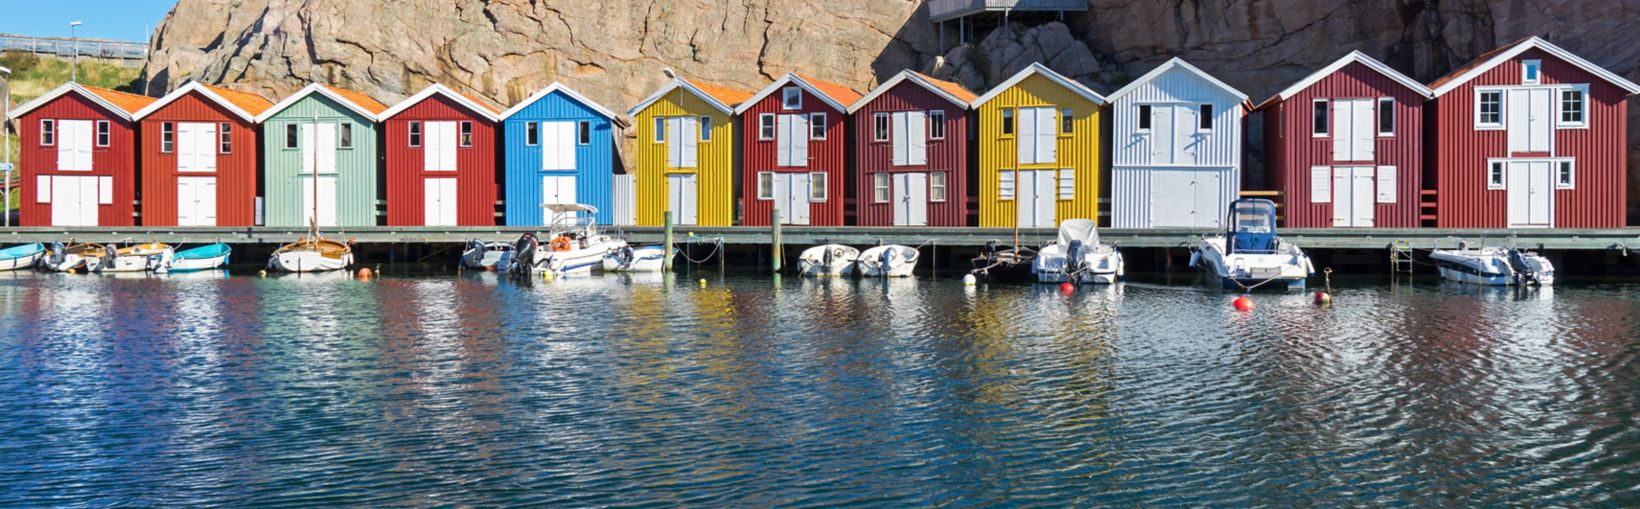 Cabanes de pêche colorées à Smögen, Suède